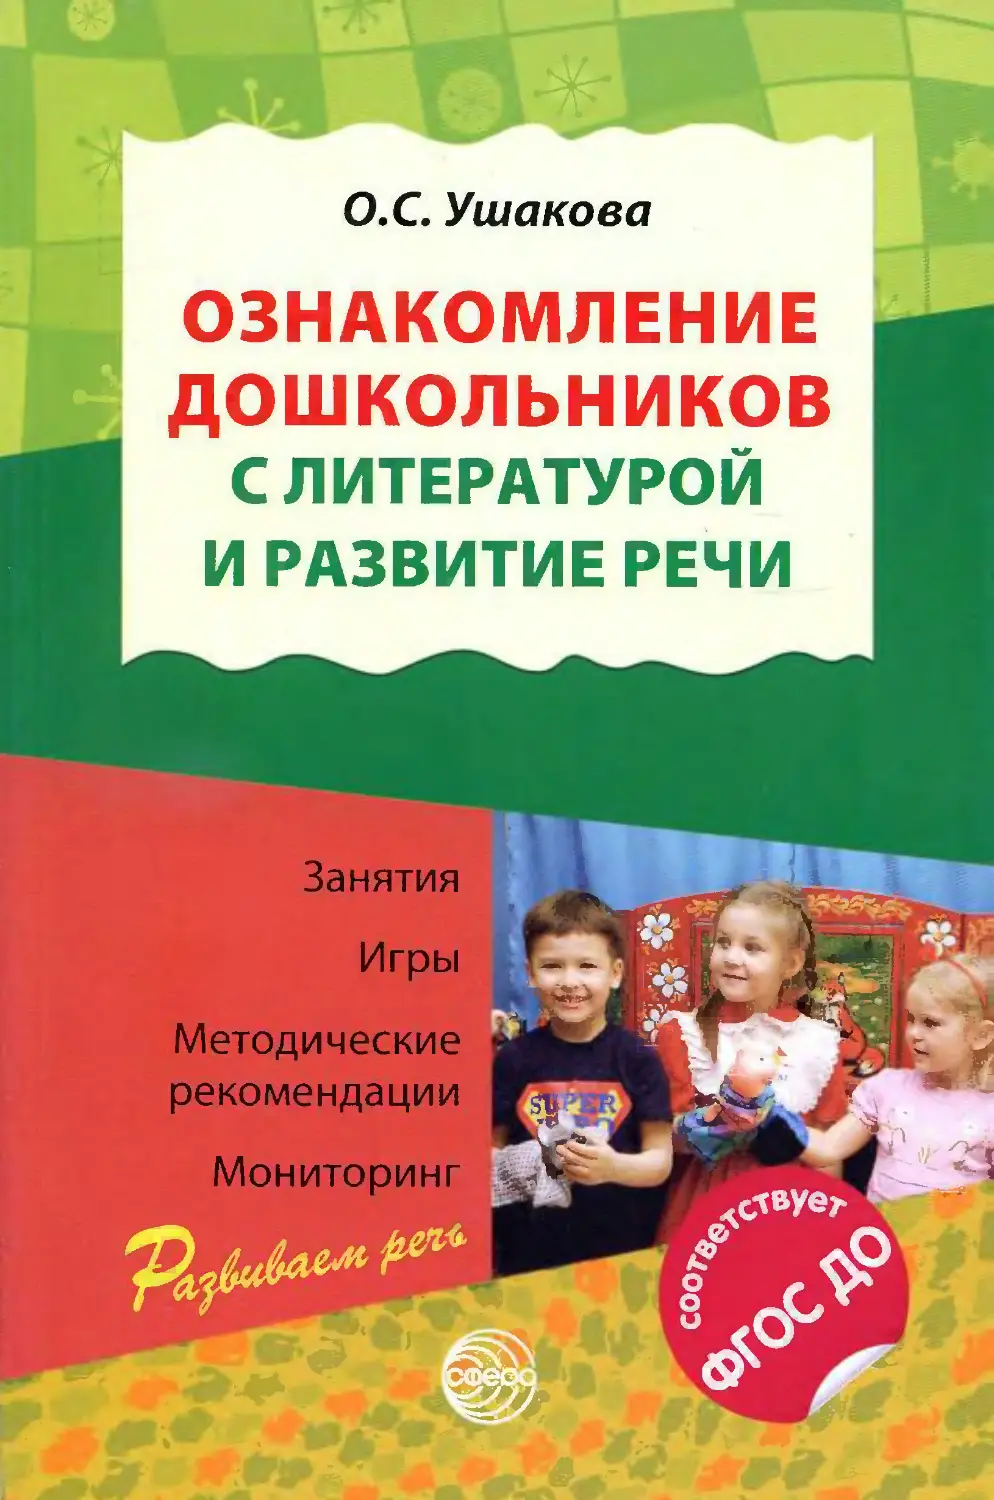 Ушакова ознакомление дошкольников с литературой и развитие речи